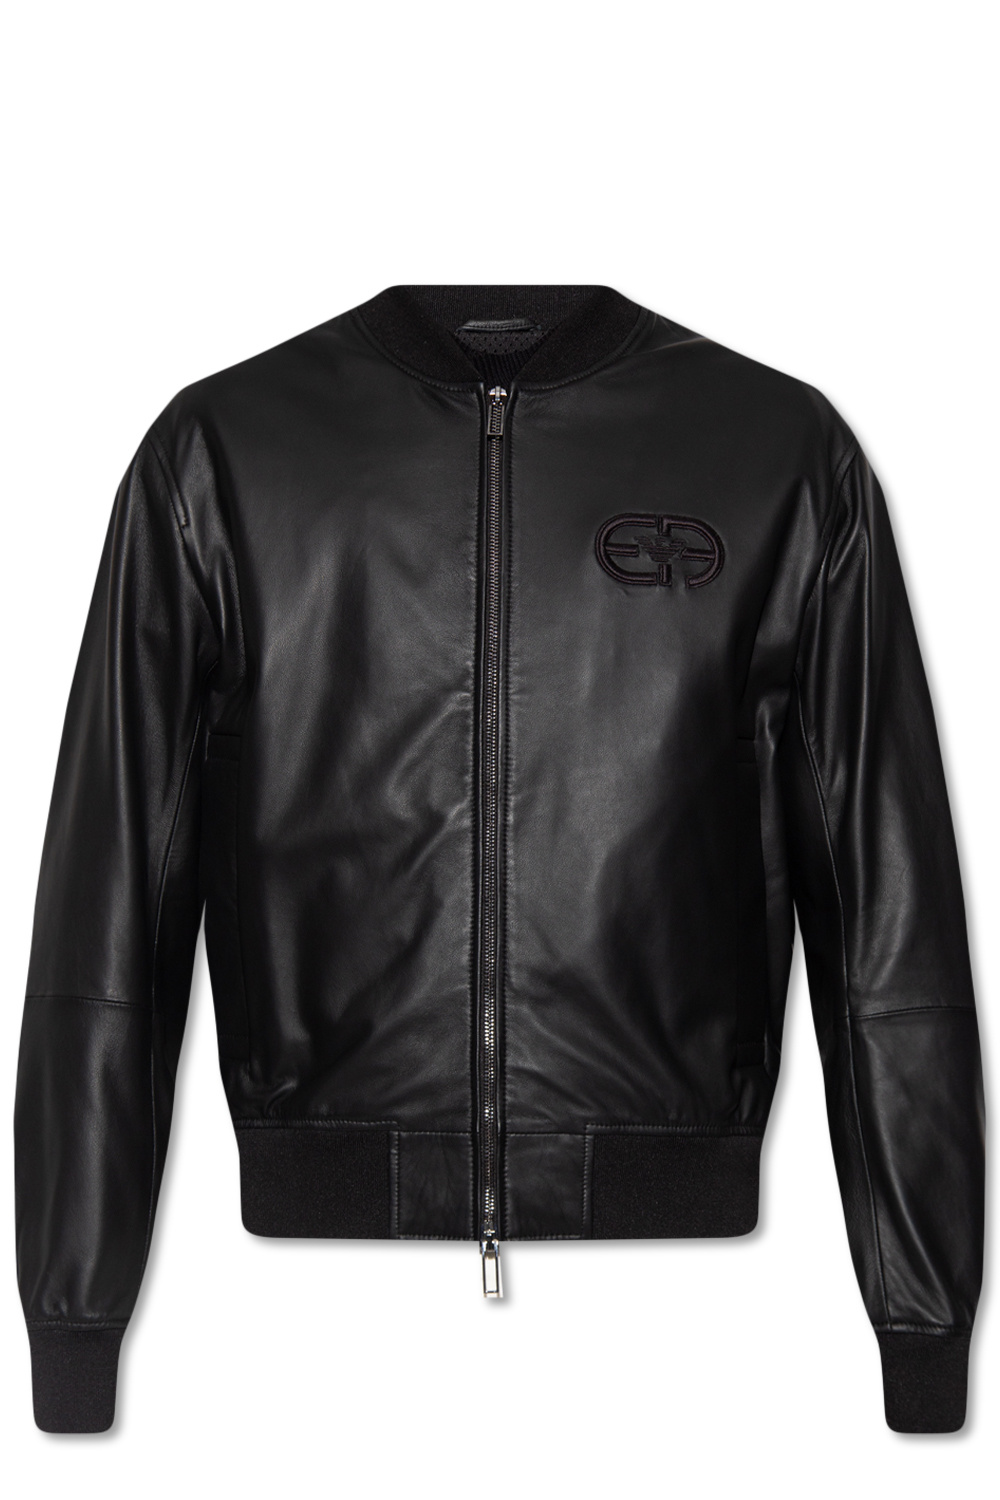 Leather jacket Emporio Armani - Vitkac France